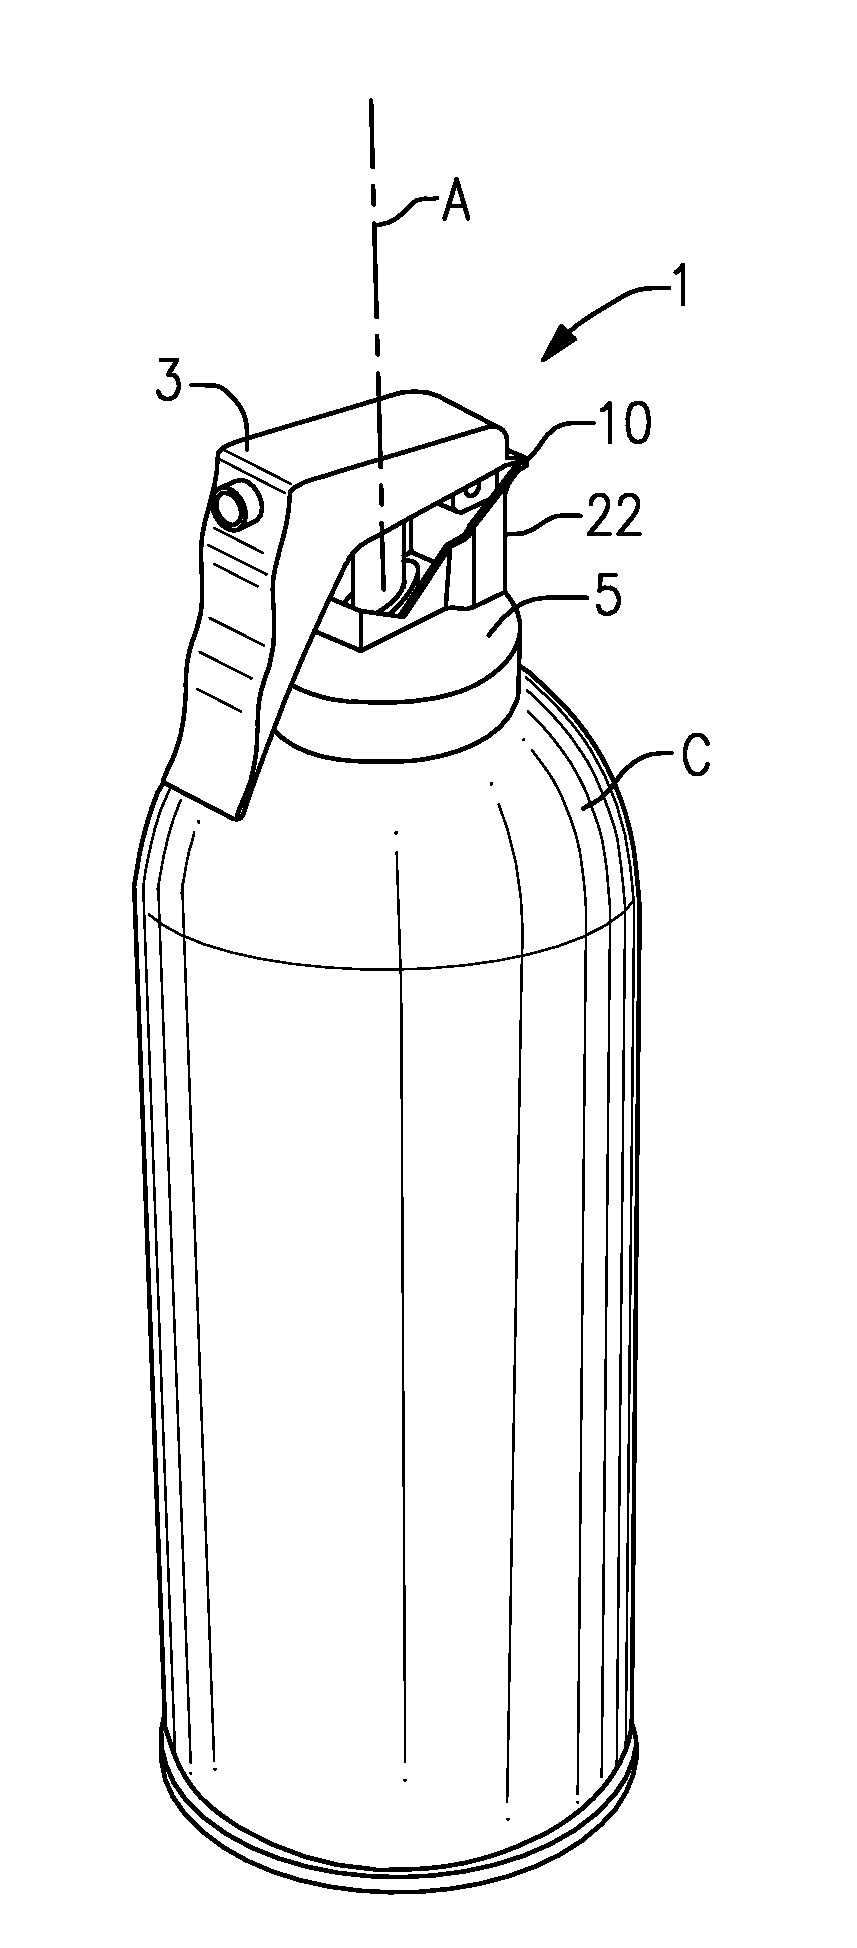 One-piece trigger cap for a spray dispenser